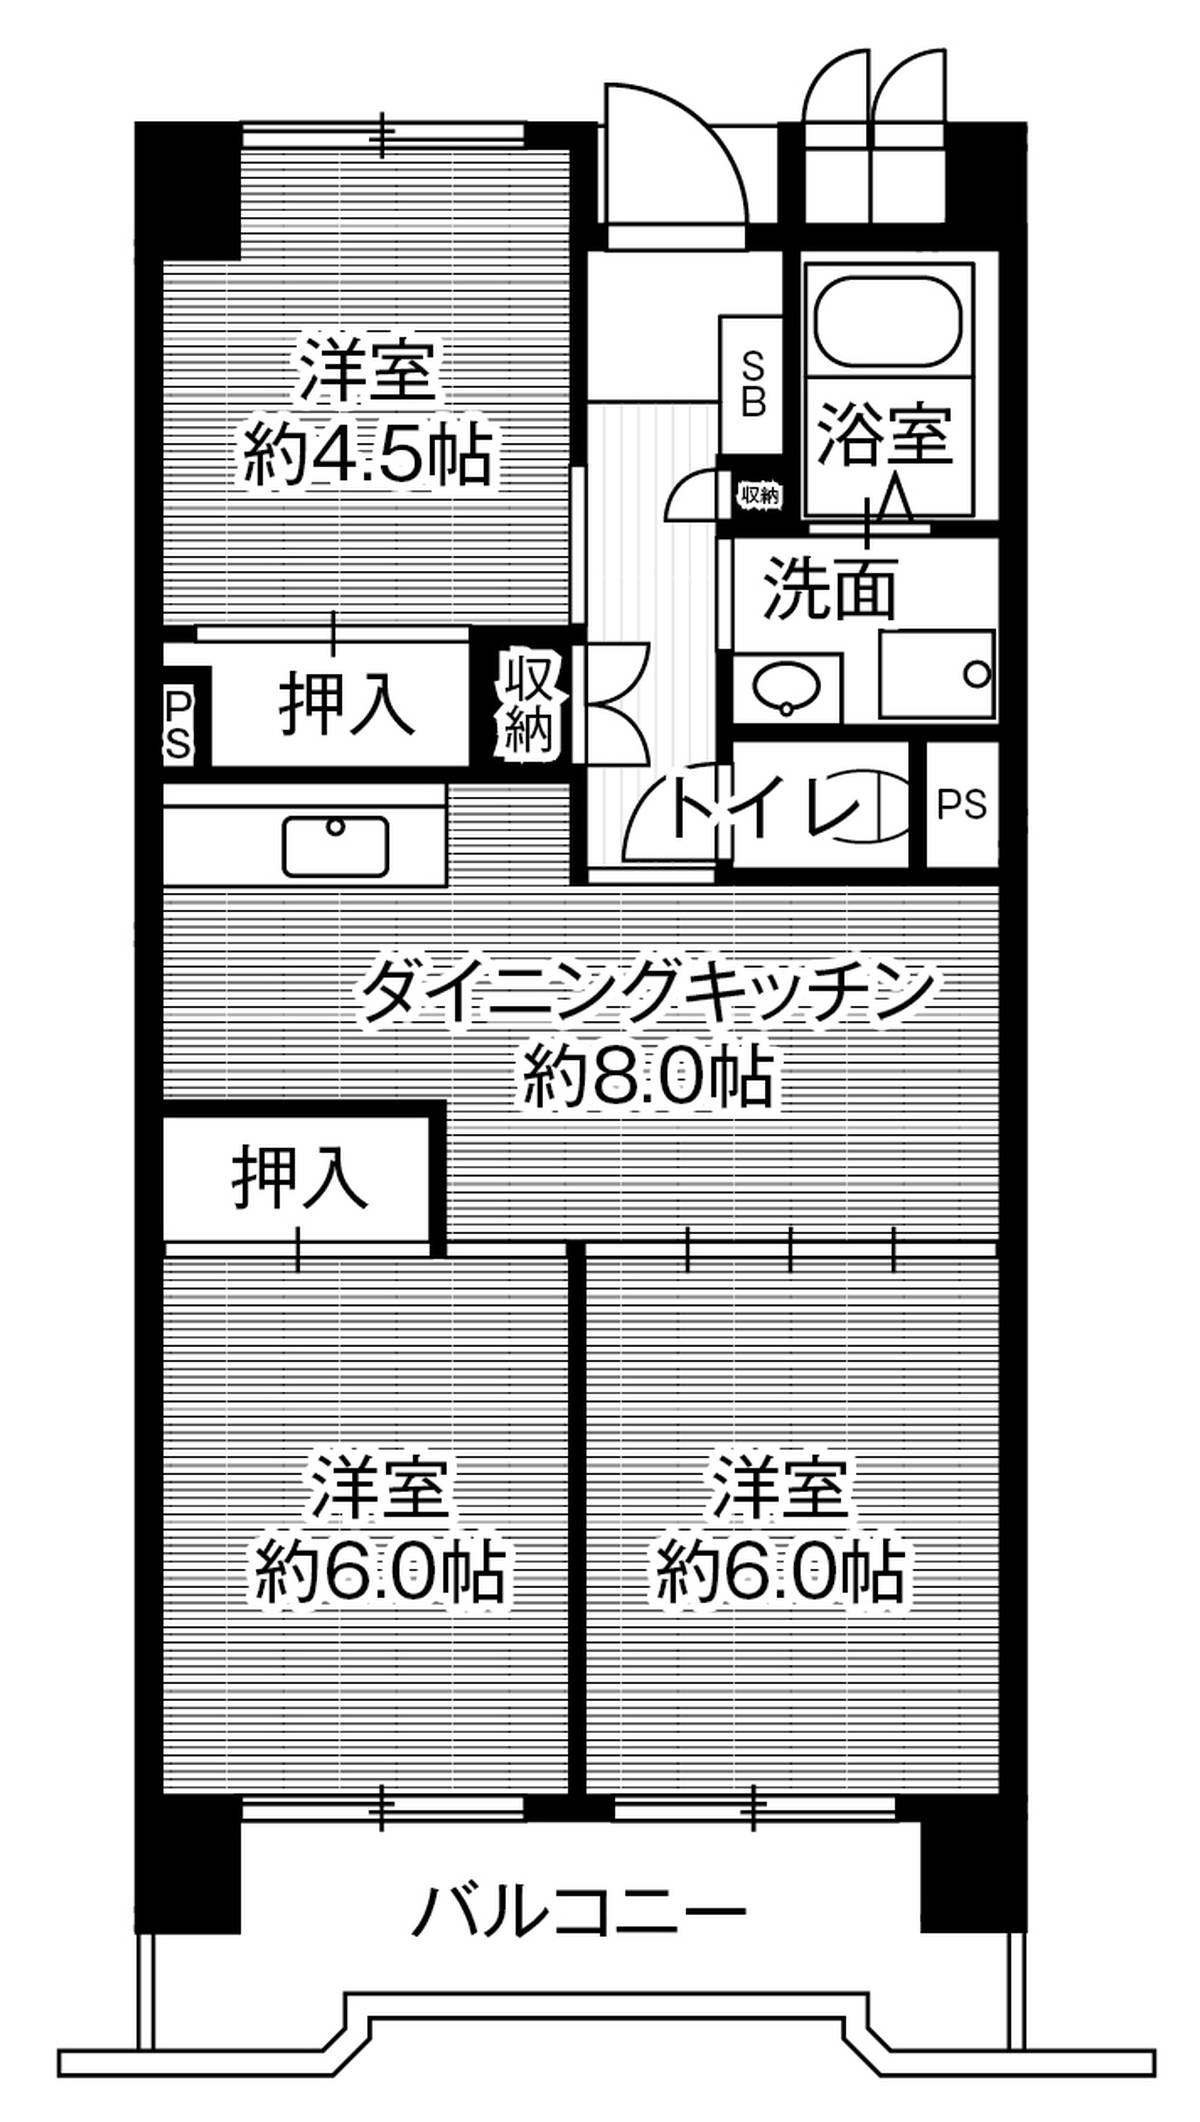 Sơ đồ phòng 3DK của Village House Kasadera Tower ở Minami-ku